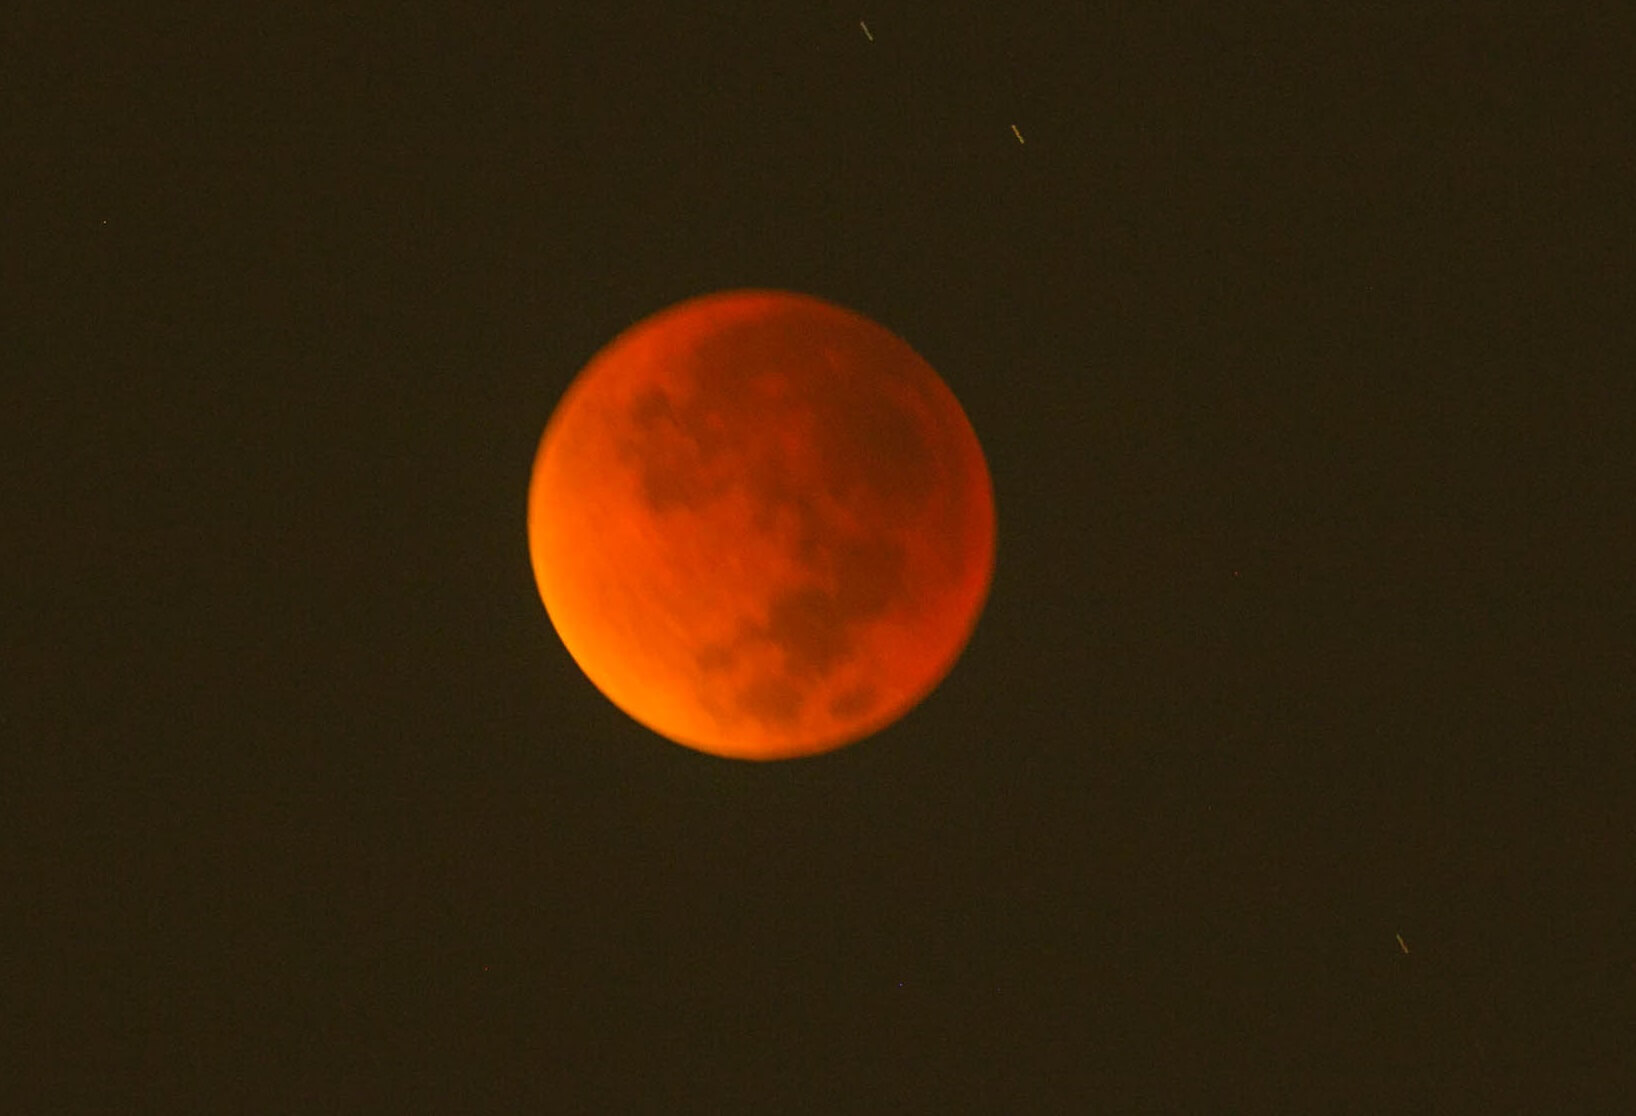 ירח דם בעת ליקוי הירח 28/10/15 כפי שנראה מאיזור המרכז בישראל. צילום: יוסי עוז.